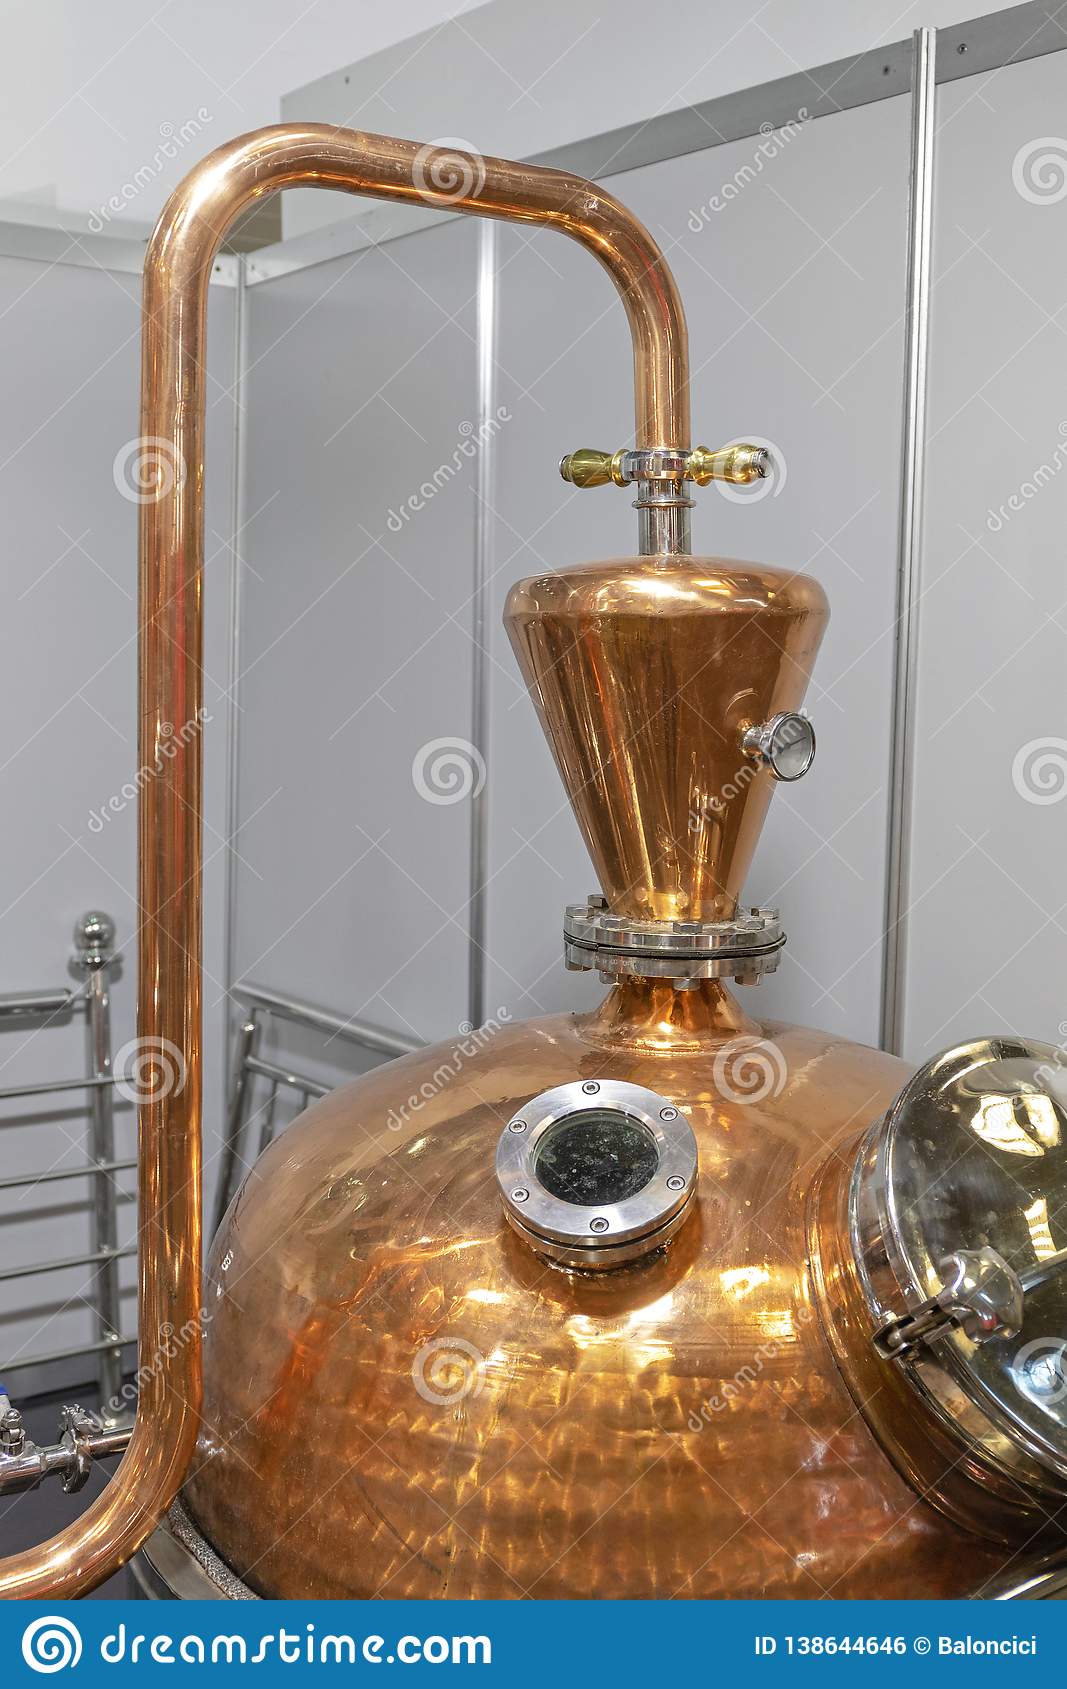 1646577670-copper-pot-still-classic-copper-distilling-alcohol-still-brewery-equipment-138644646.jpg